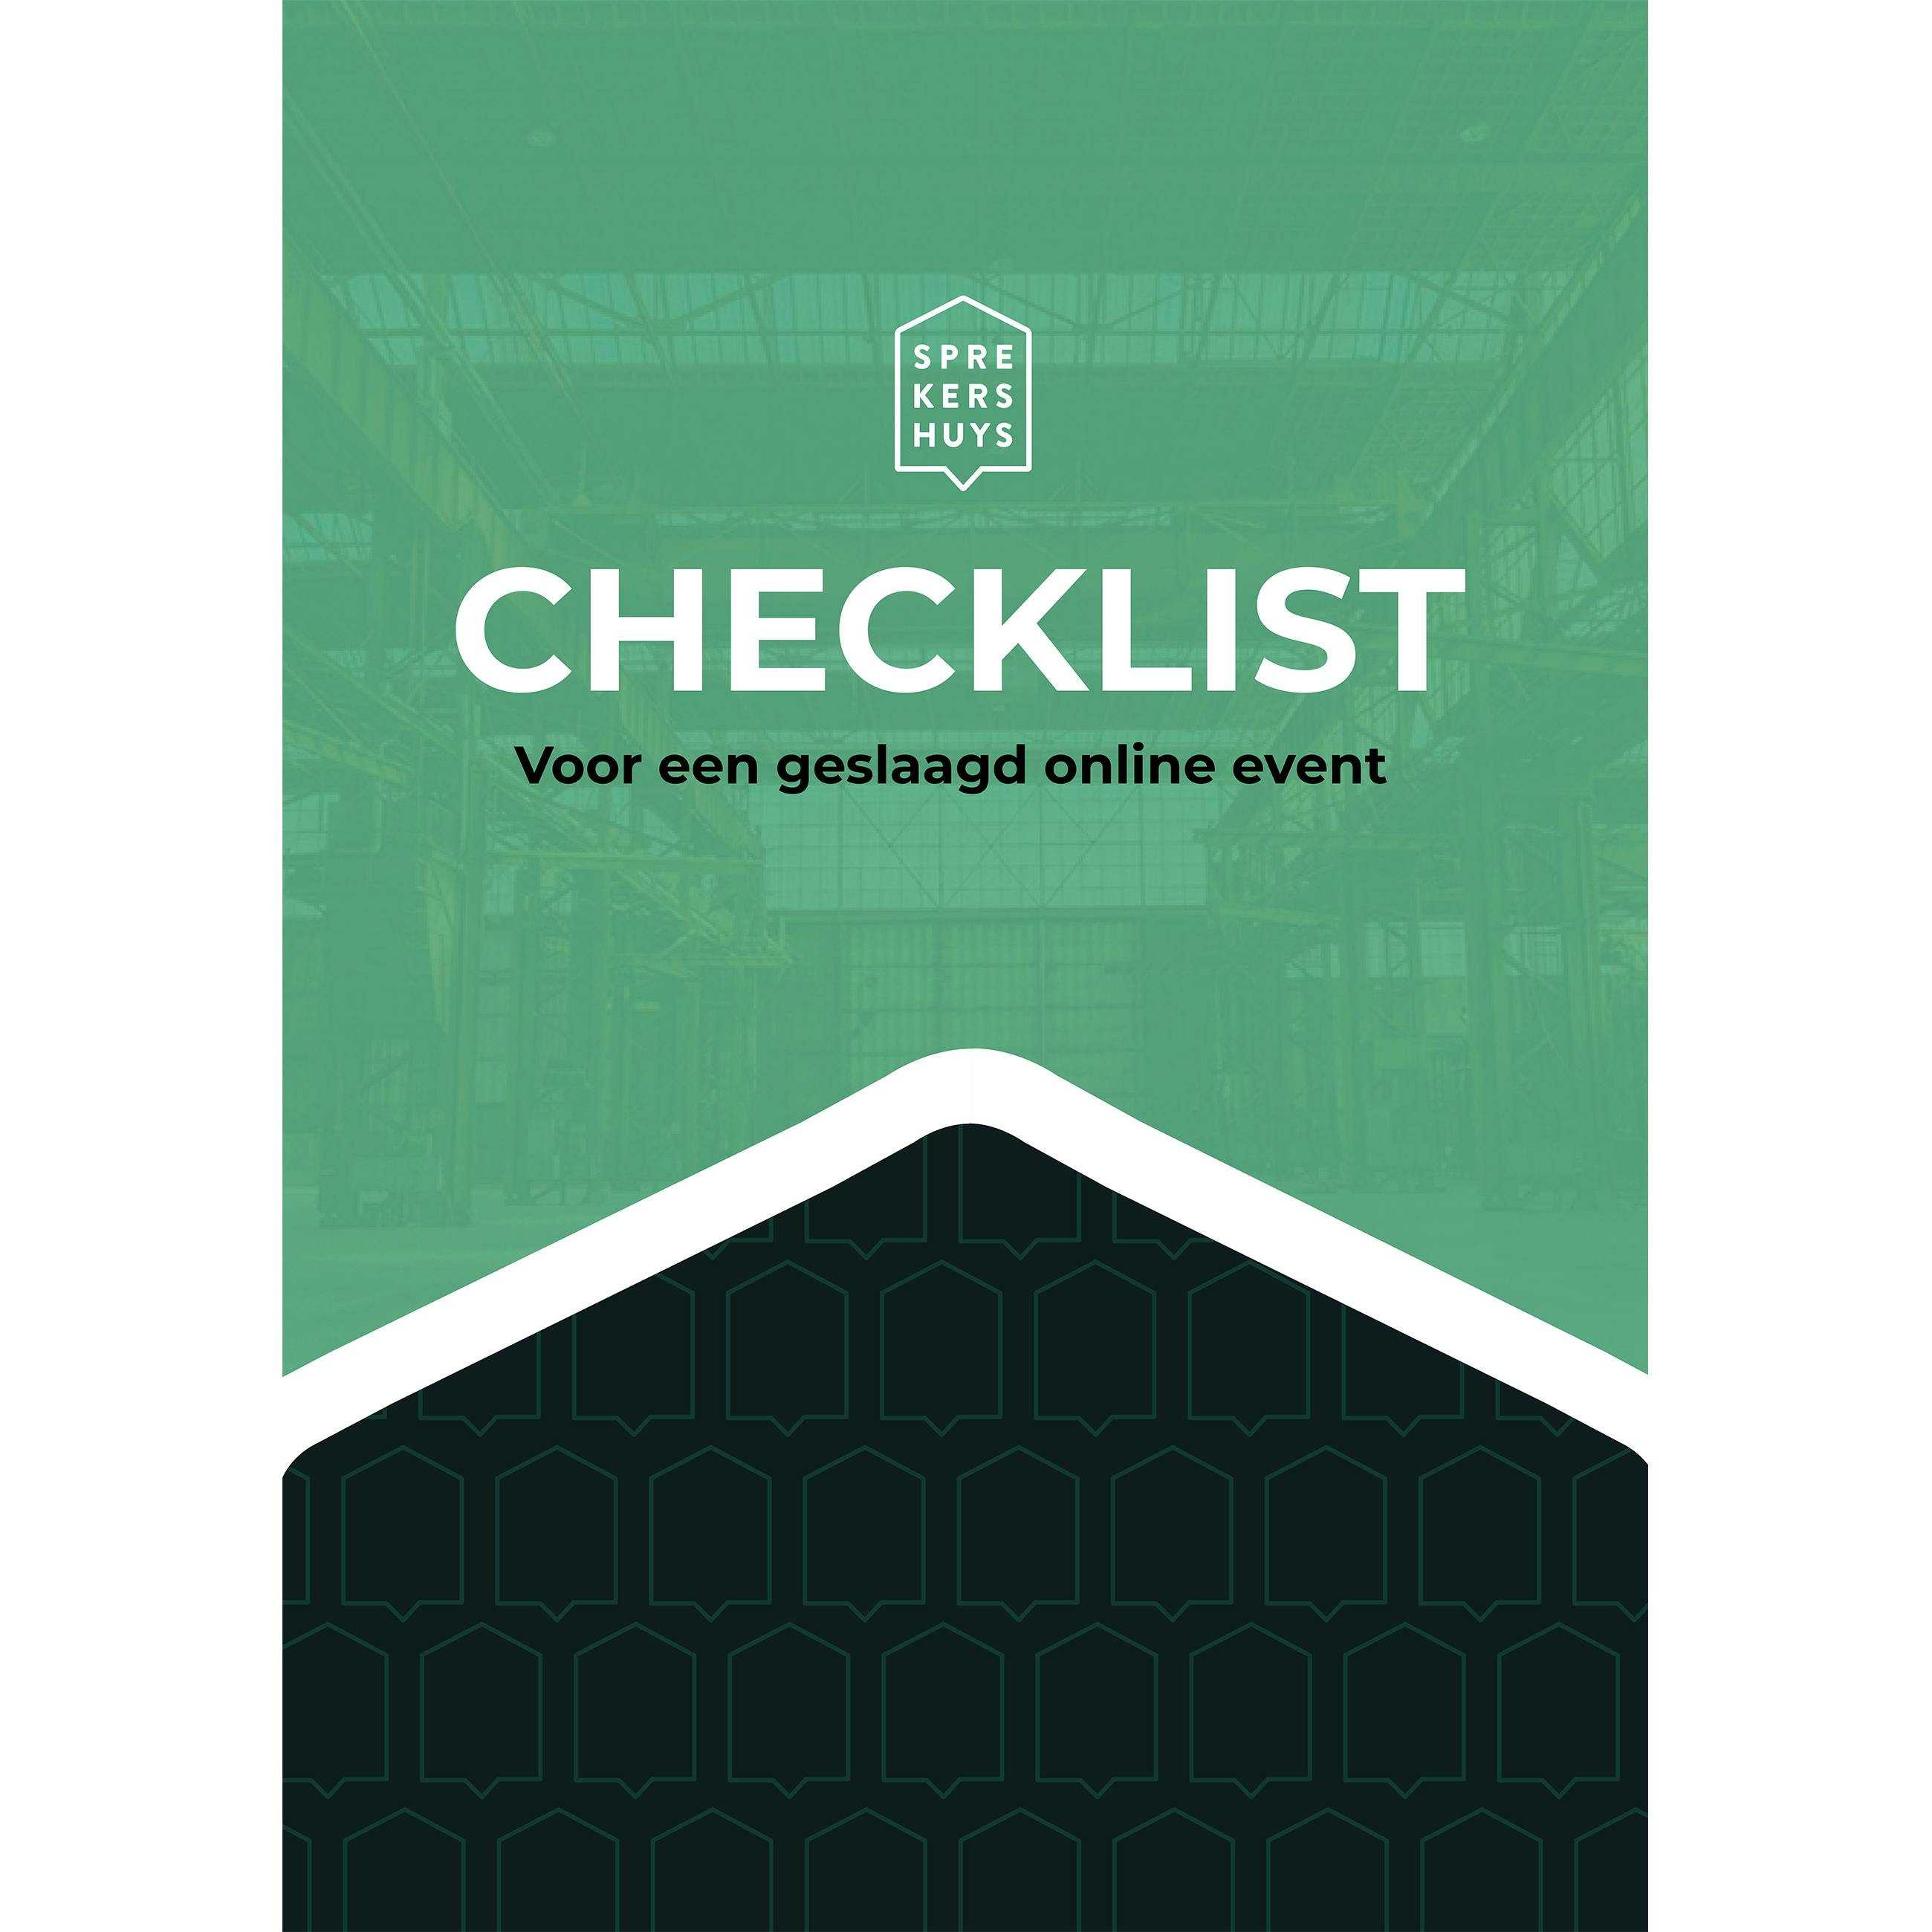 Checklist online events